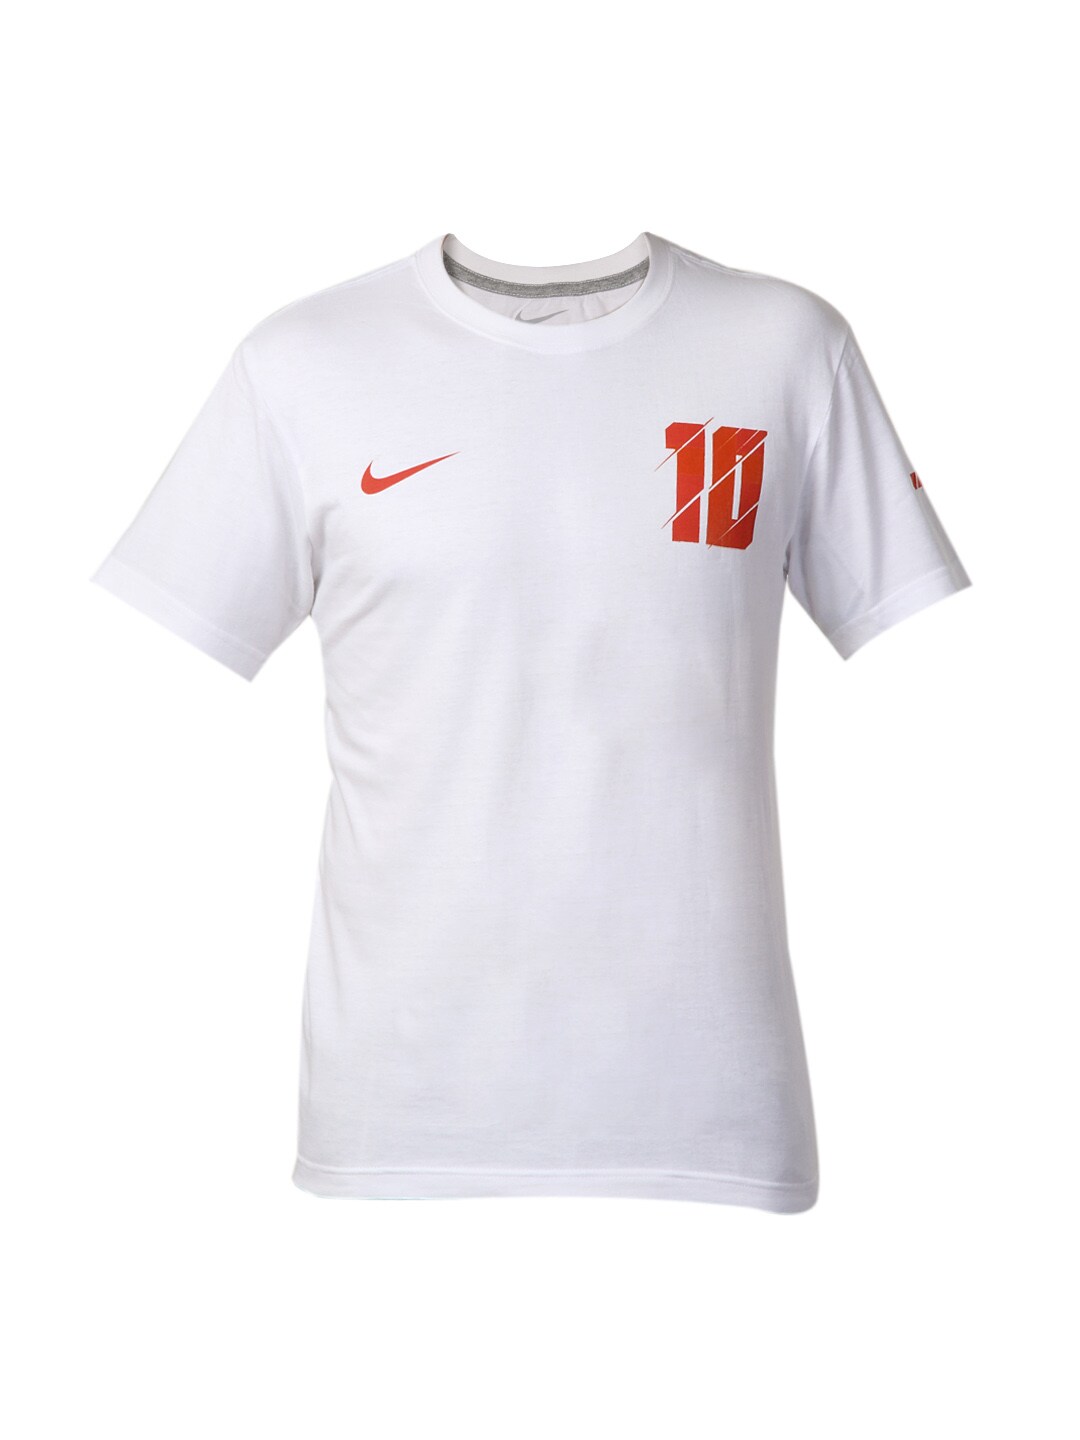 Nike Men White Rooney Football T-shirt